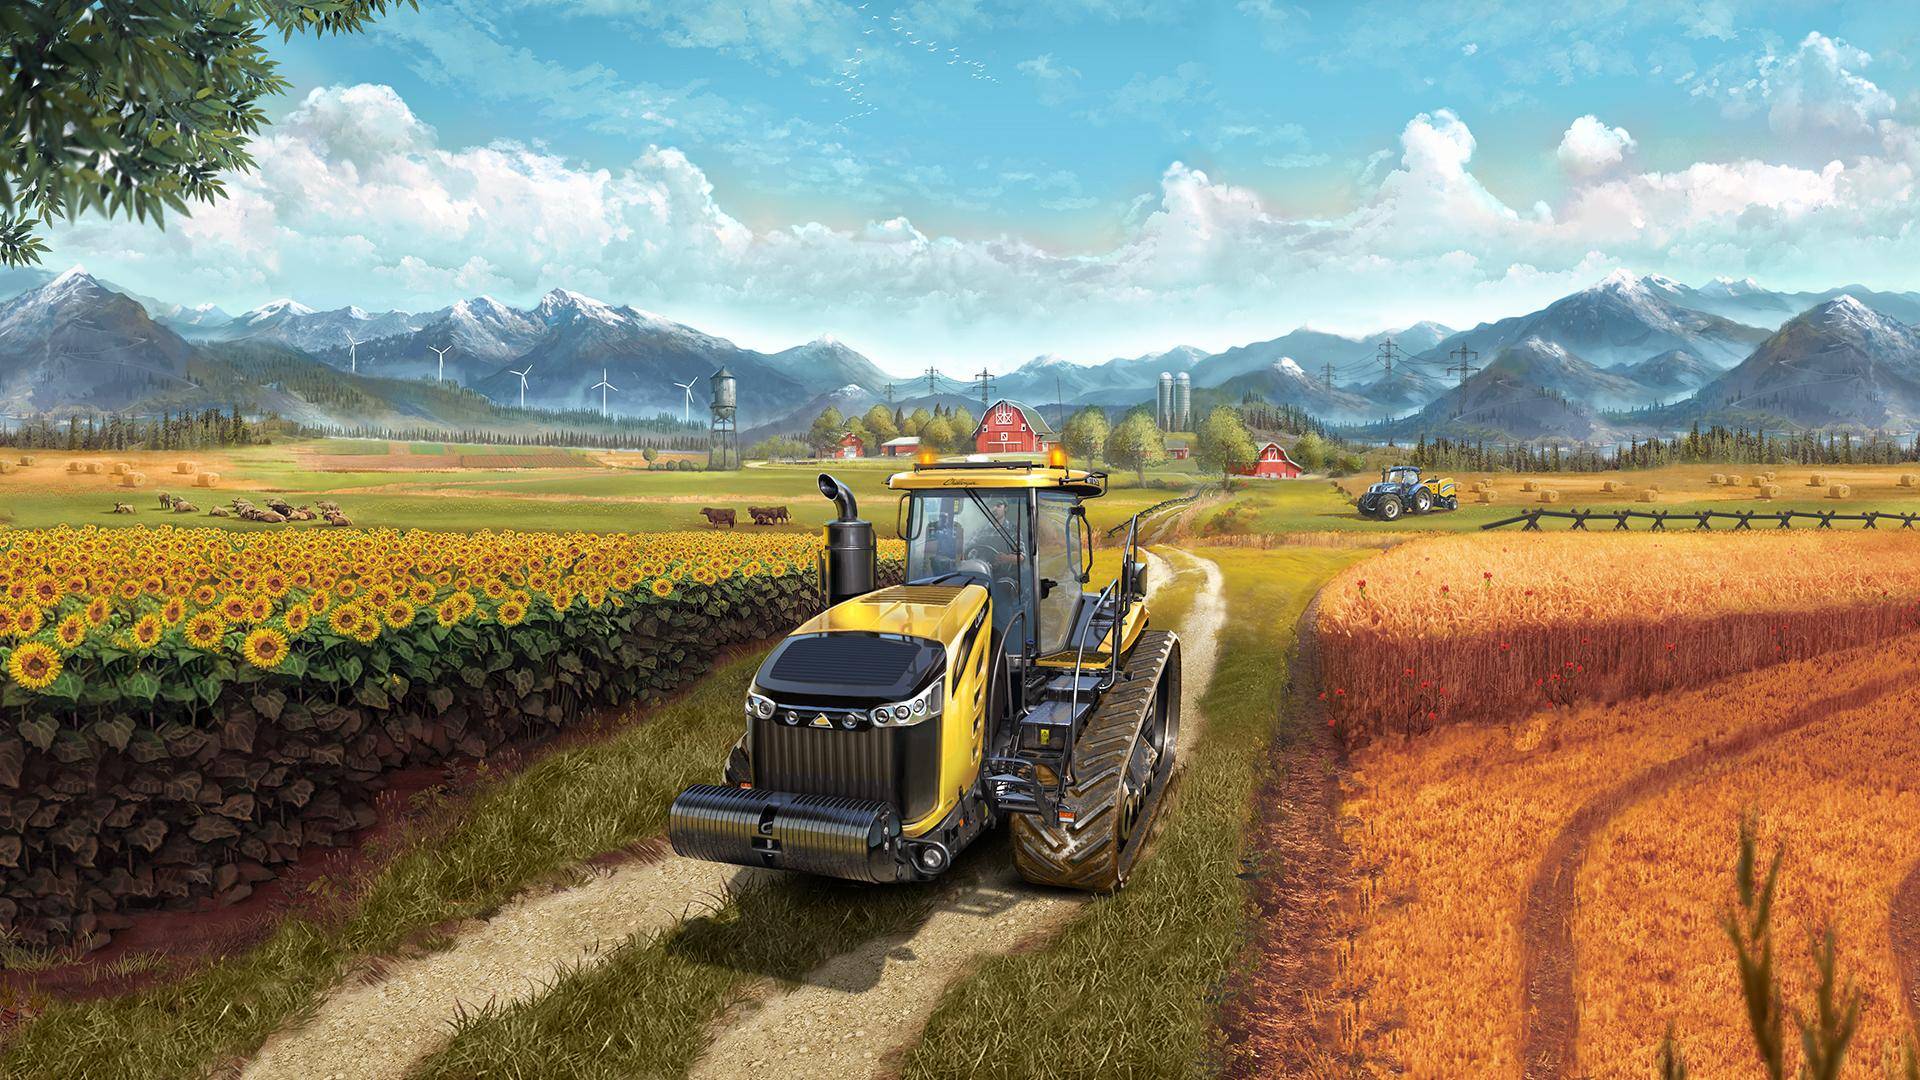 Farming Simulator 22 Новая Карта. Выживания с нуля